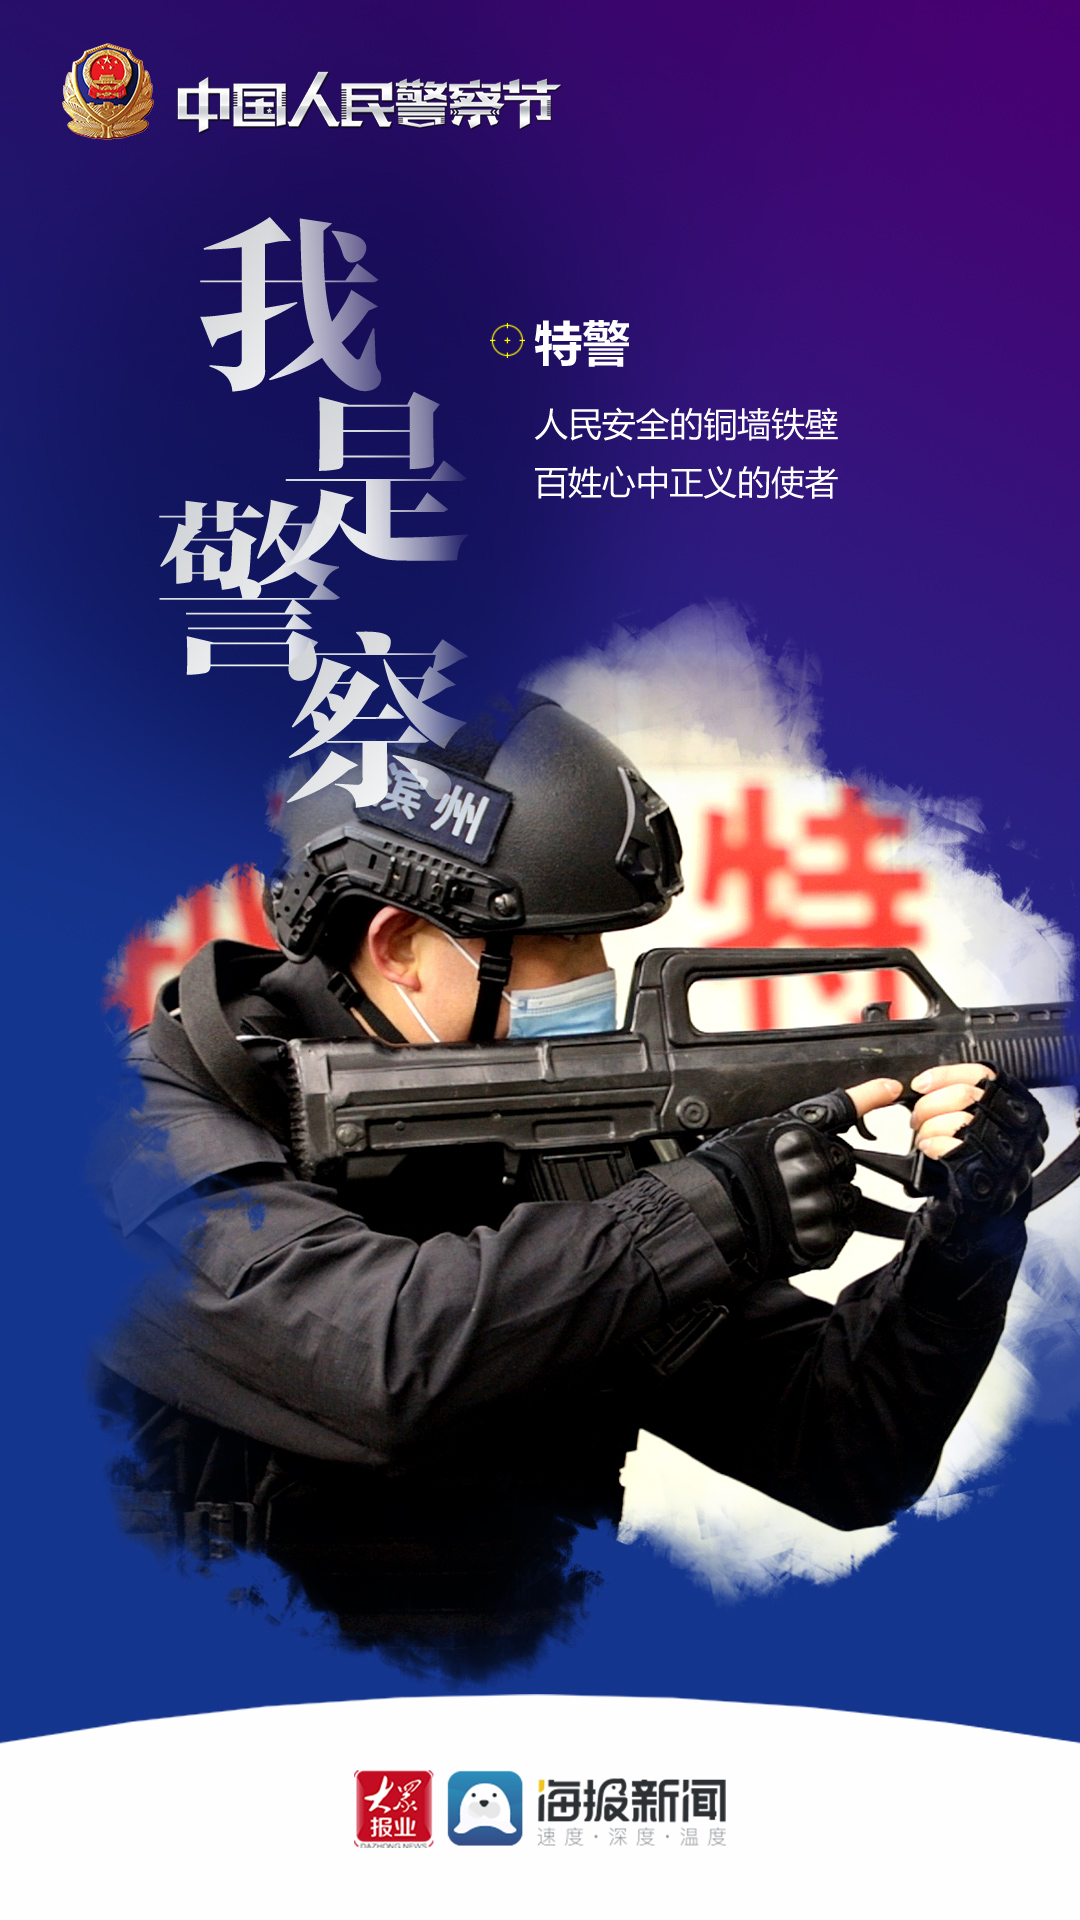 年1月10日是第一个中国人民警察节,大众网·海报新闻记者用镜头记录